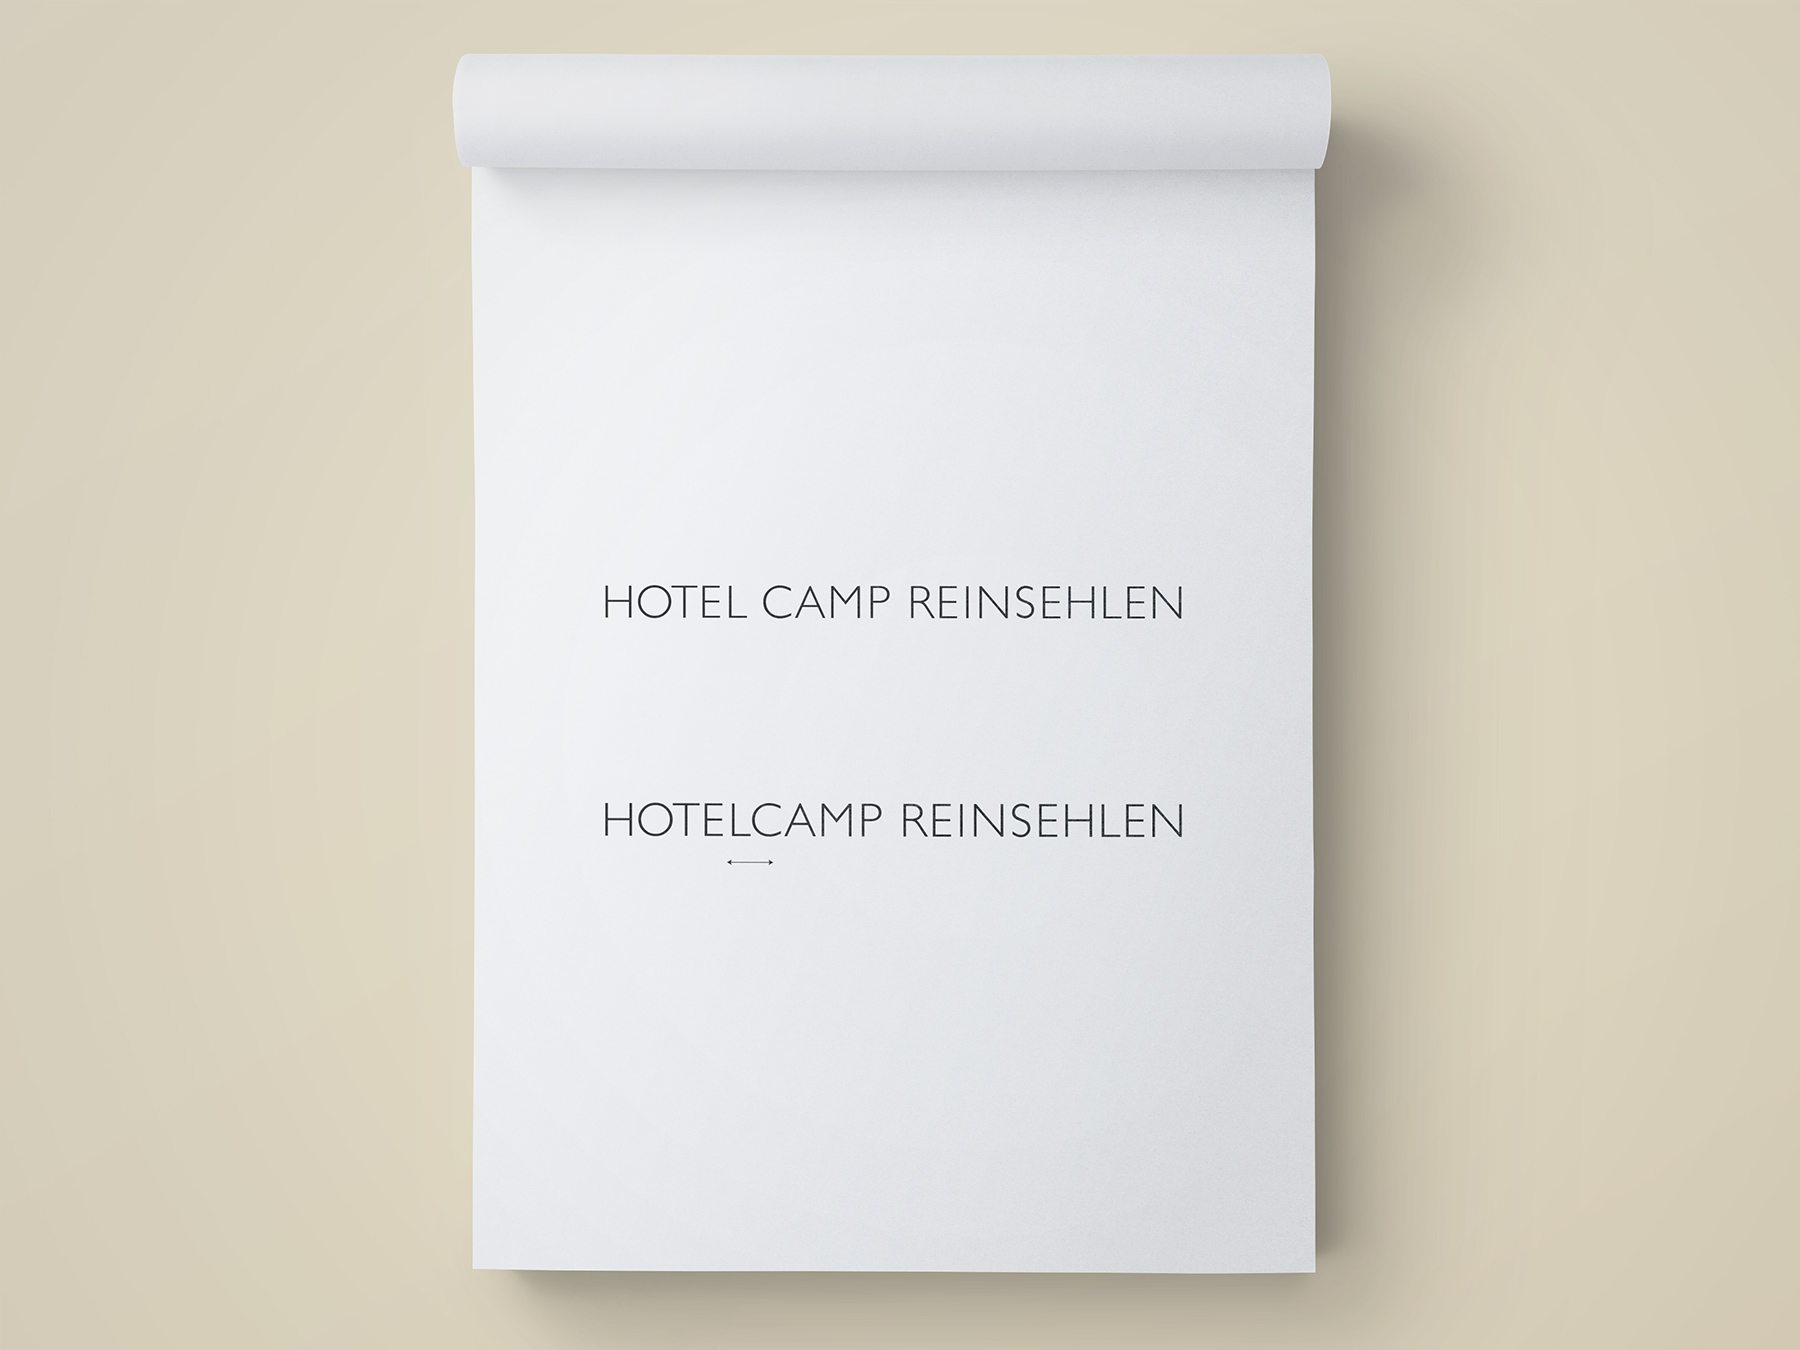 Hotelcamp Reinsehlen Namensentwicklung Werbeagentur Hamburg